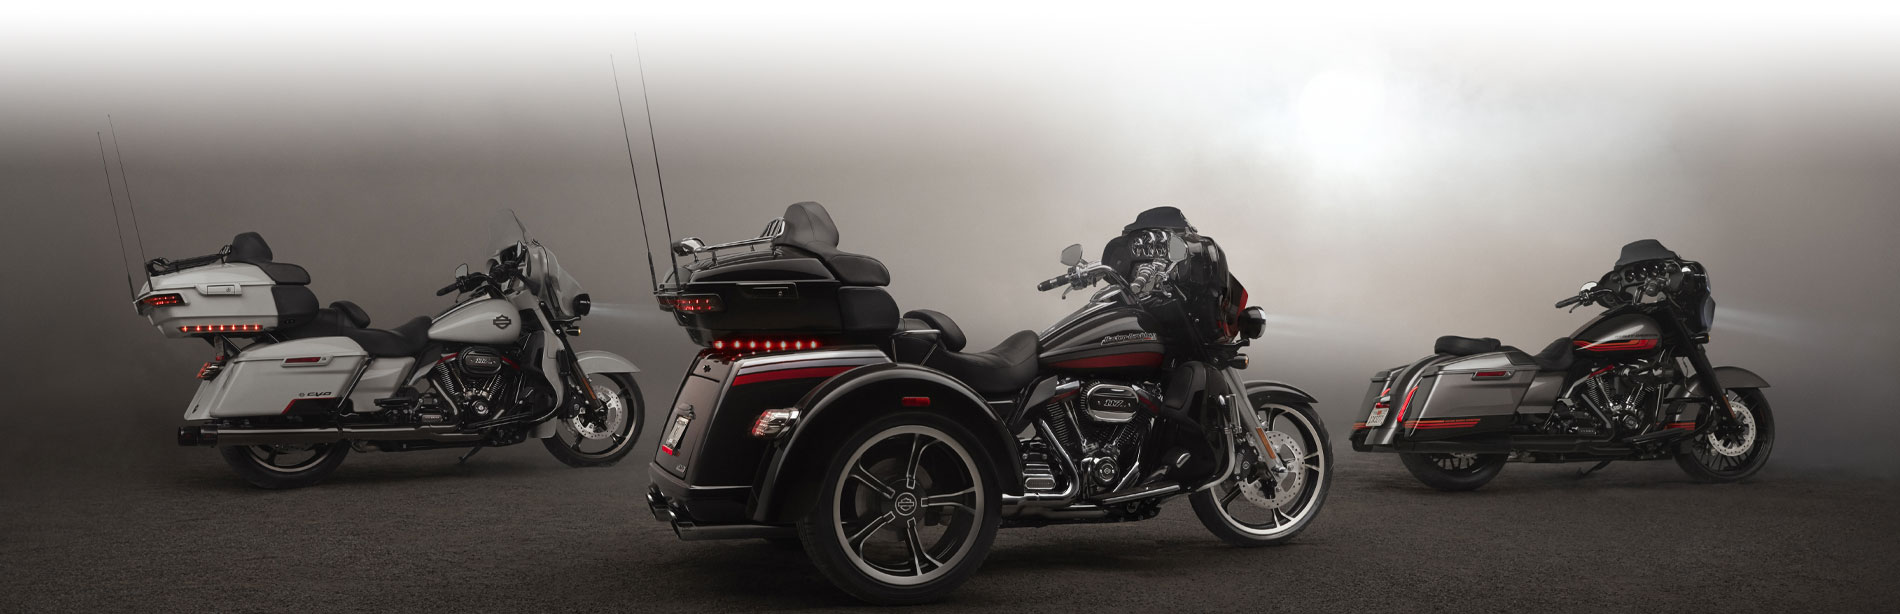 About Texarkana Harley-Davidson